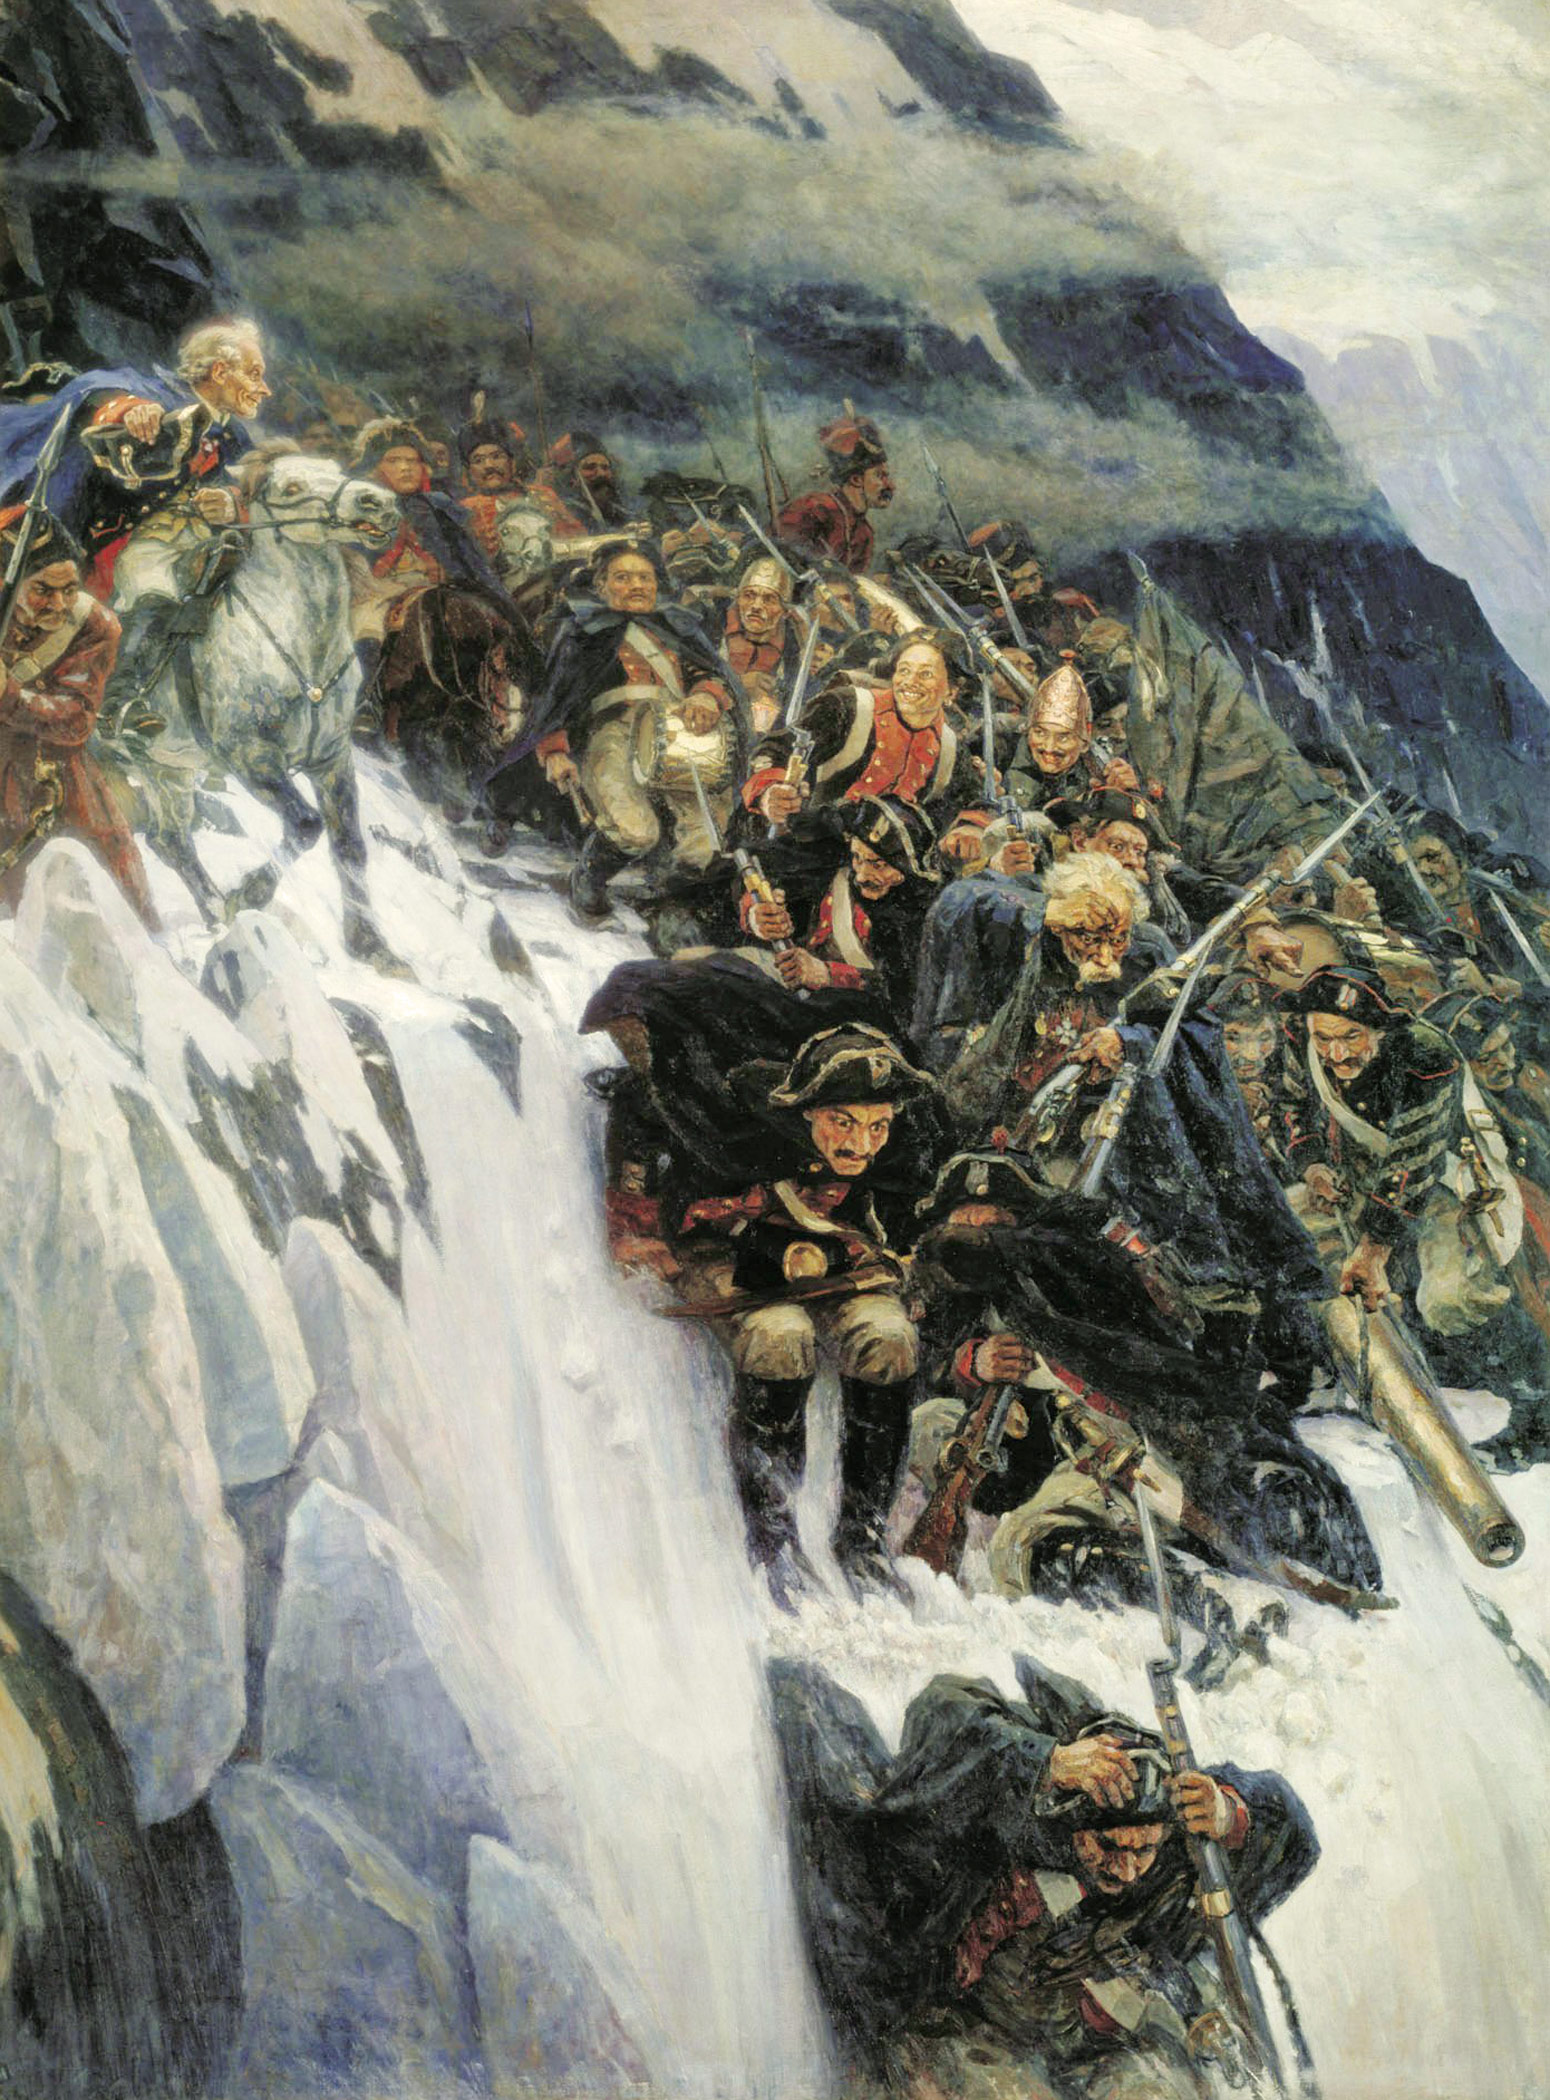 Картина Сурикова «Переход Суворова через Альпы». 1899 г.Краткое описание